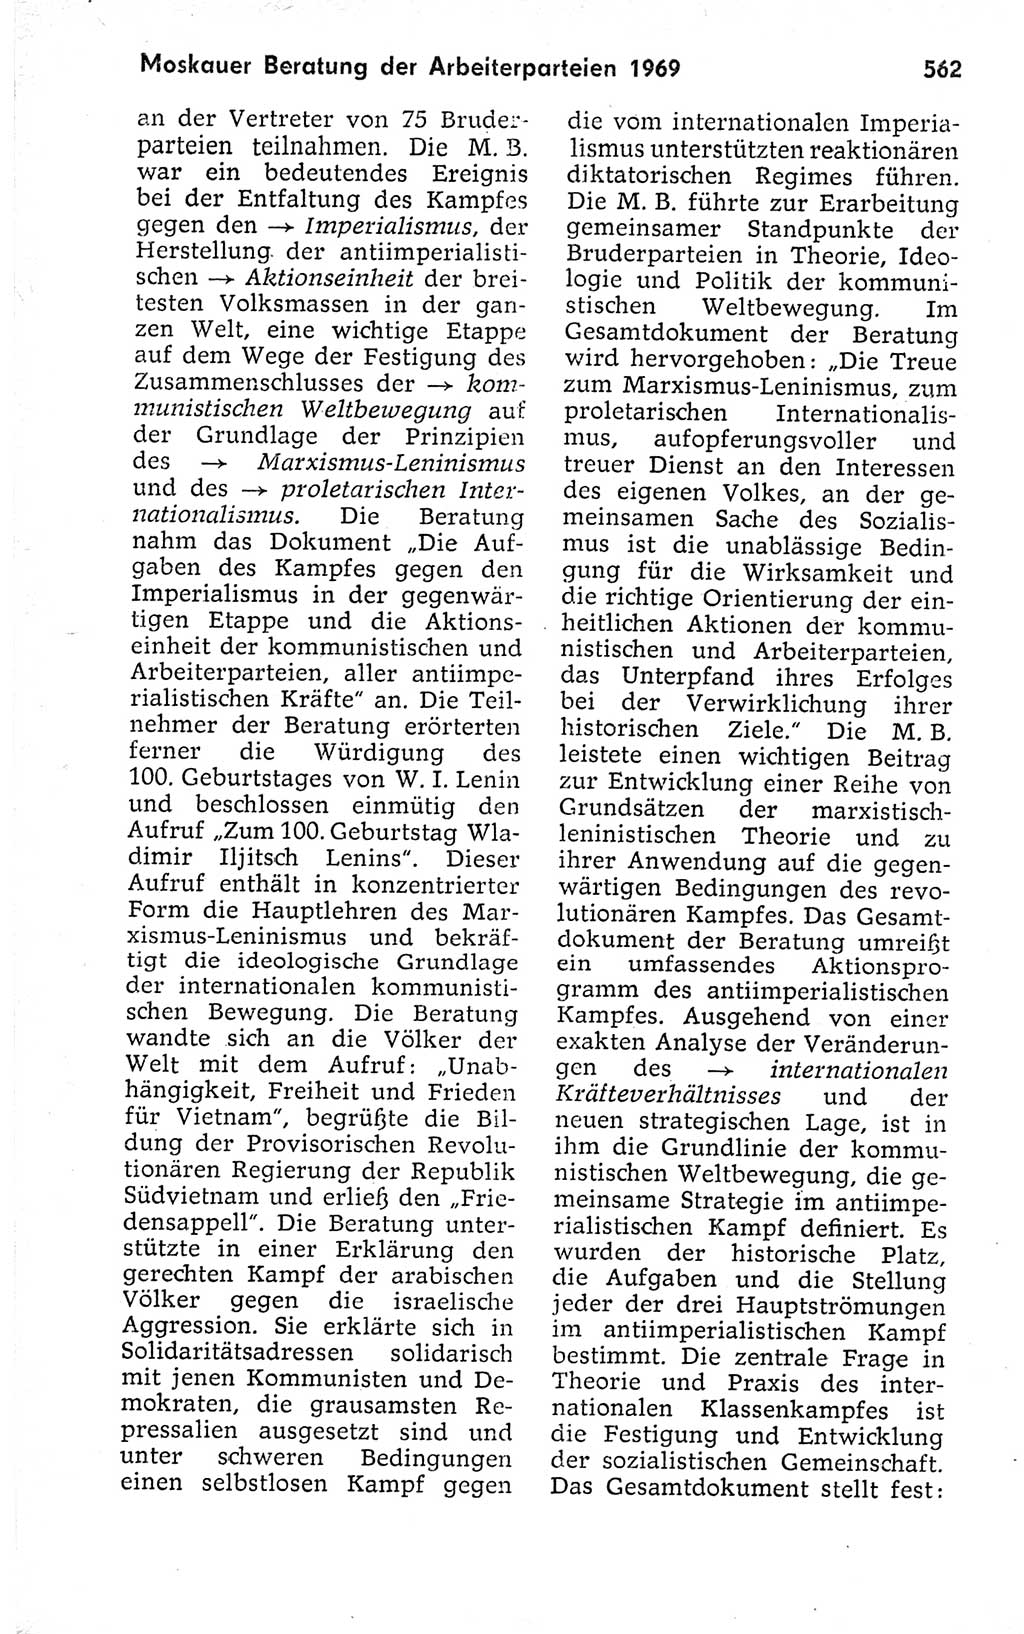 Kleines politisches Wörterbuch [Deutsche Demokratische Republik (DDR)] 1973, Seite 562 (Kl. pol. Wb. DDR 1973, S. 562)